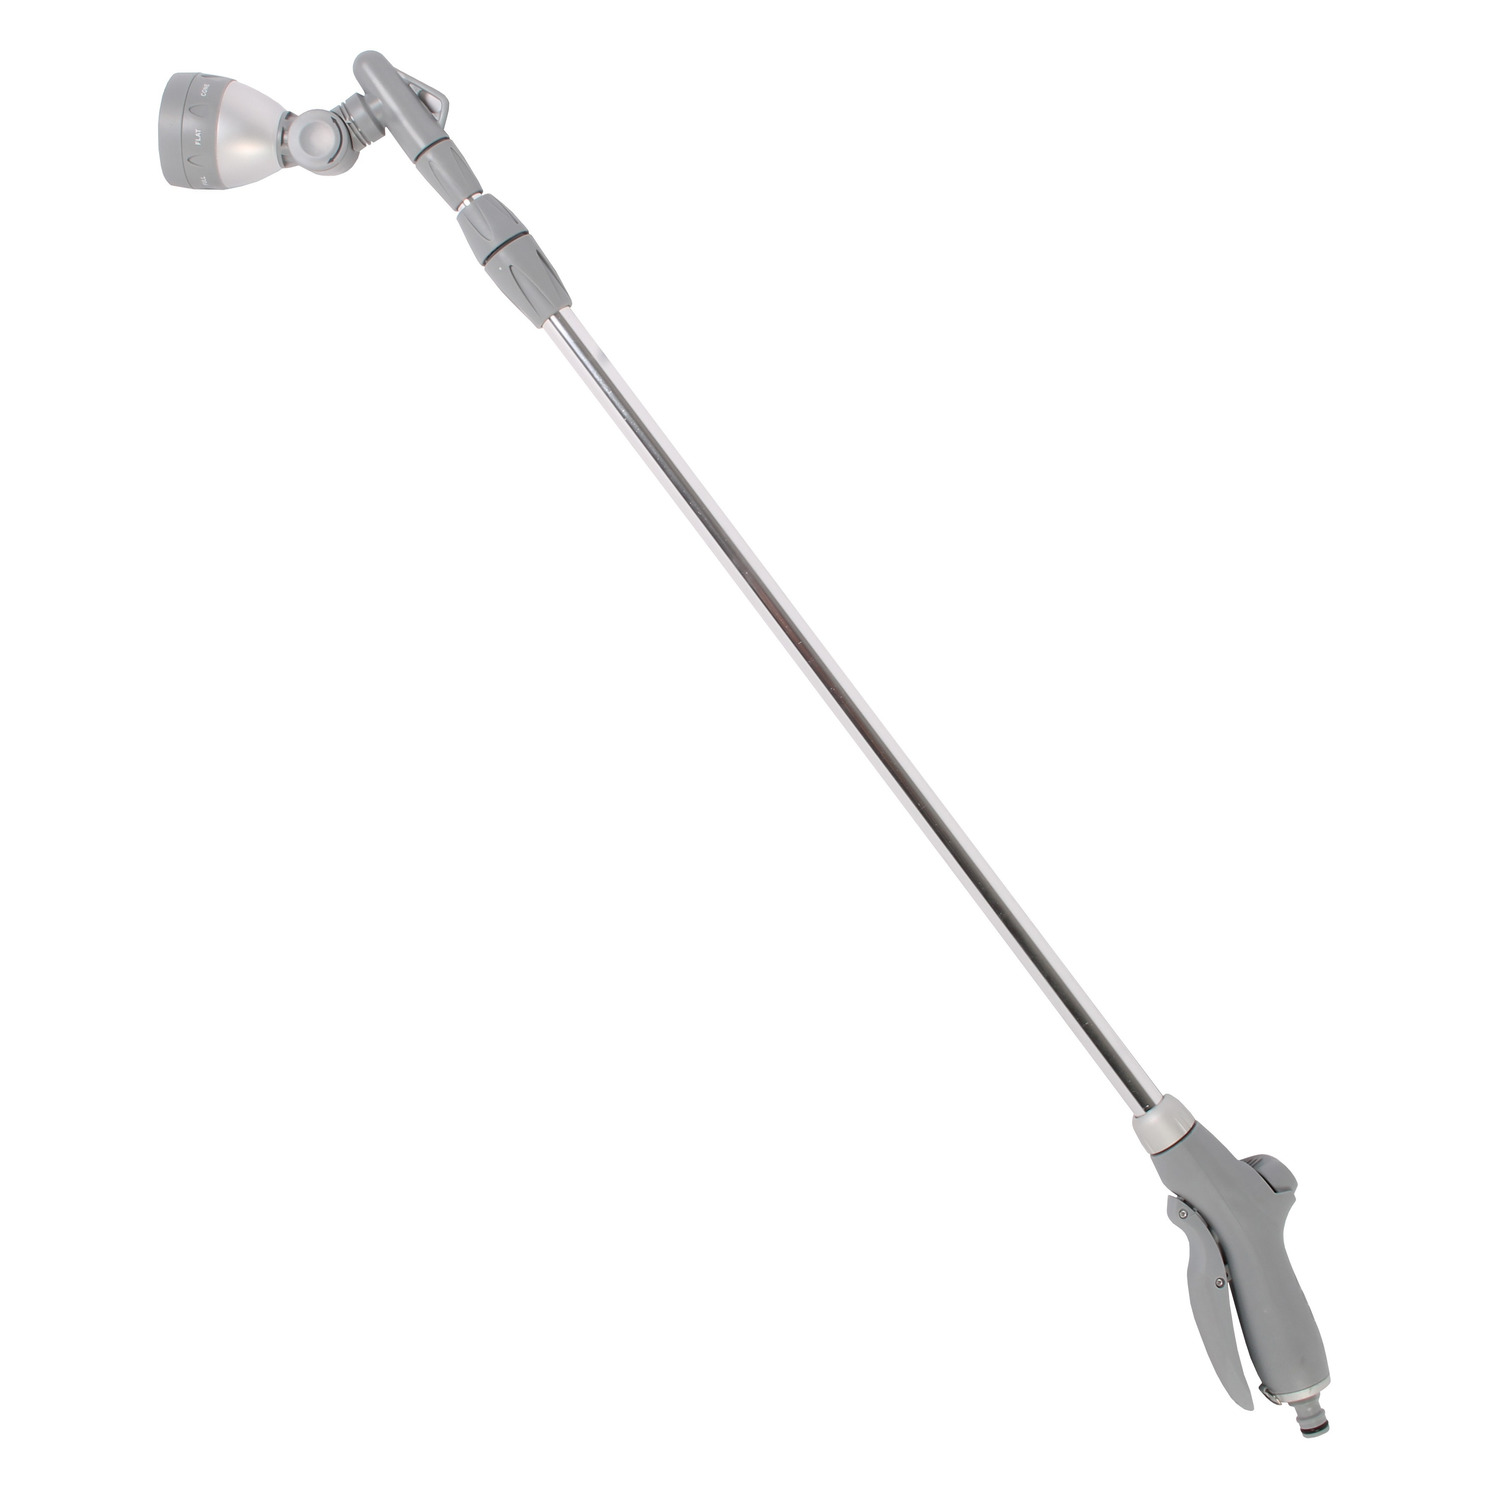 Broespistool-broeskop voor tuinbewatering met telescopisch verlengstuk tot 155 cm